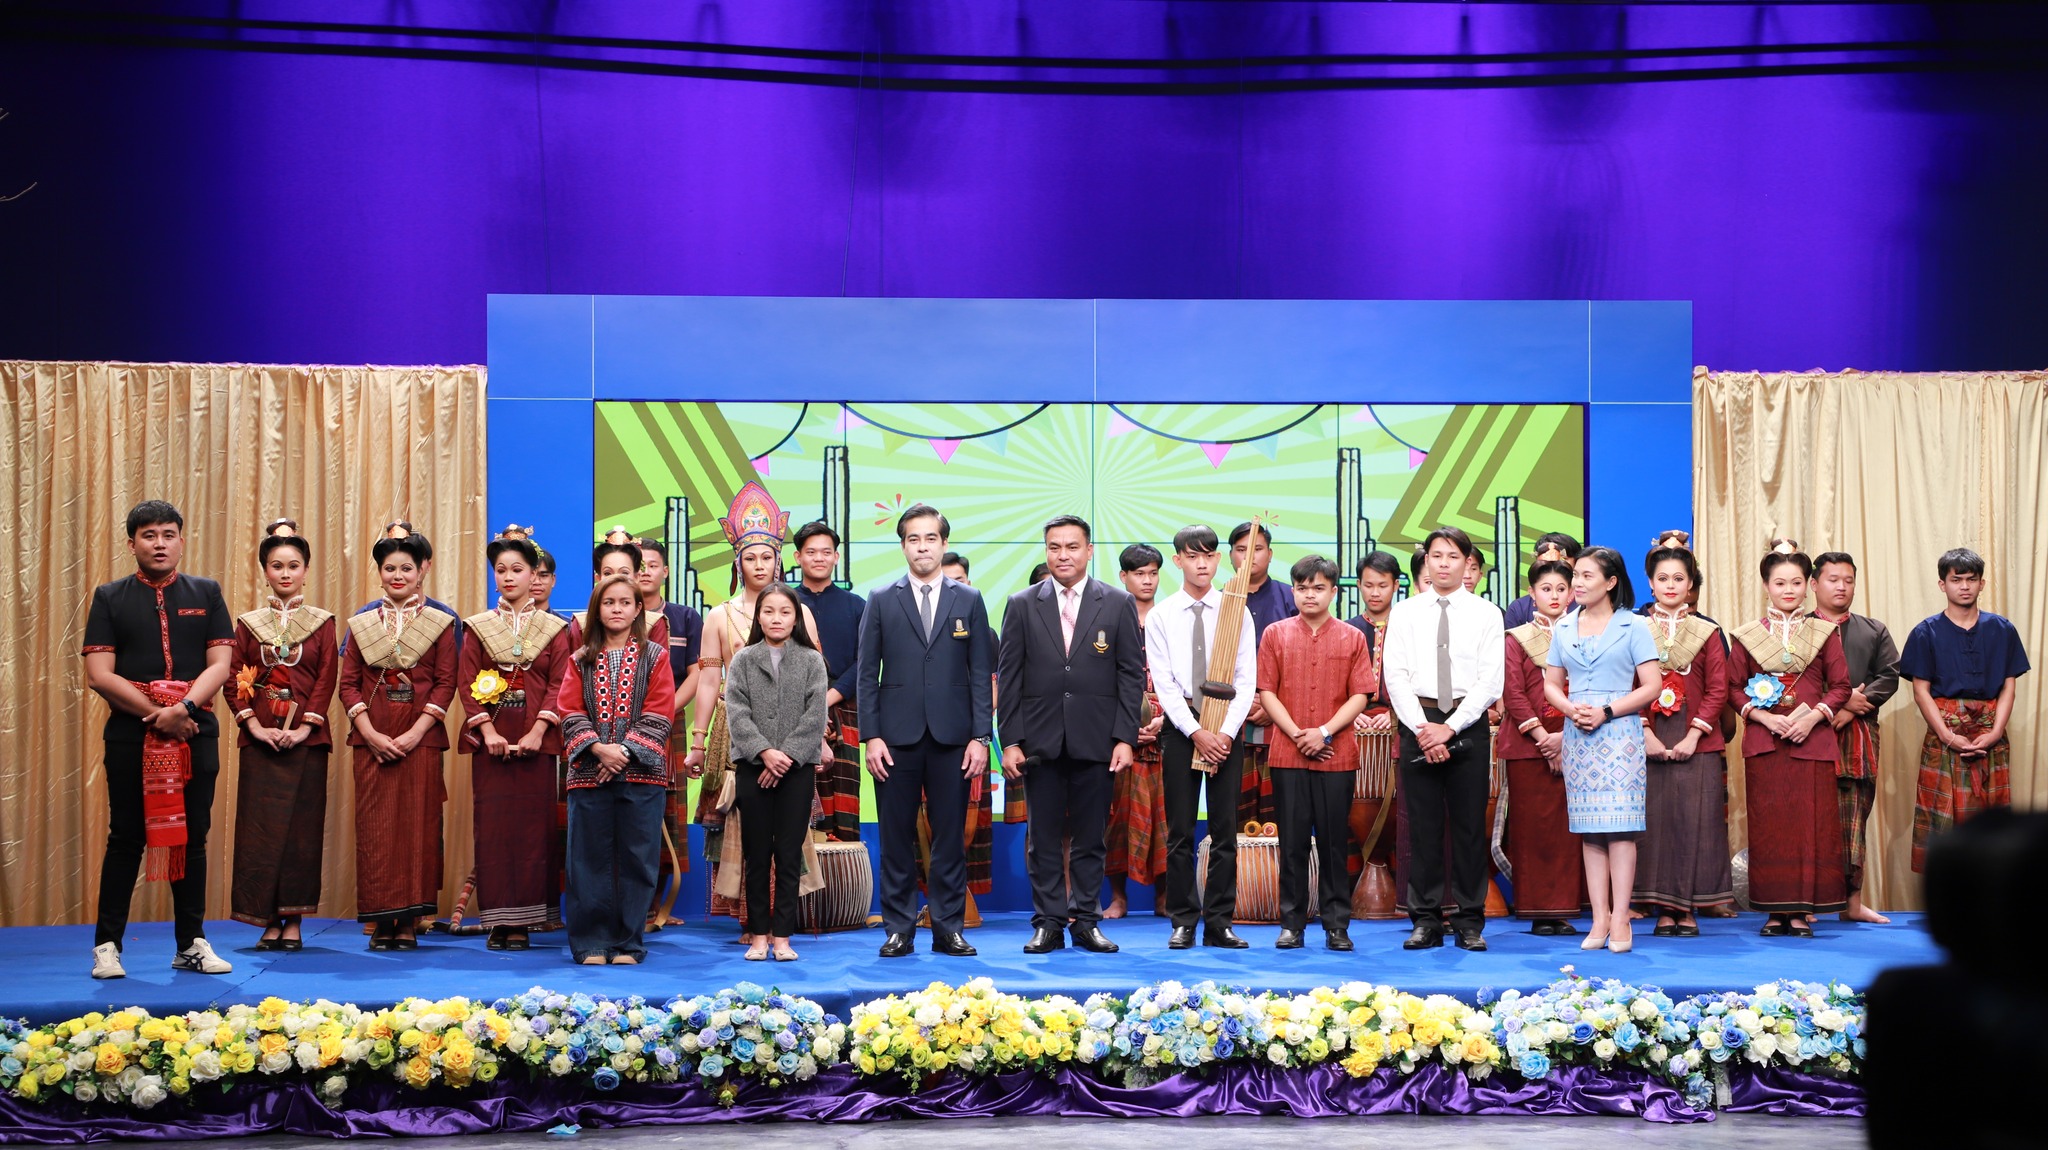 วันที่ 26 มกราคม 2566 คณะผู้บริหาร อาจารย์ และนิสิต จากคณะศิลปกรรมศาสตร์และวัฒนธรรมศาสตร์ มหาวิทยาลัยมหาสารคาม สนับสนุนการบันทึกเทปรายการ หมอลำดีทีวีอีสาน & ศิลป์อีสาน ณ ห้องแสดงสถานีวิทยุโทรทัศน์แห่งประเทศไทยขอนแก่น  ช่อง NBT 11 ทีวีอีสาน  